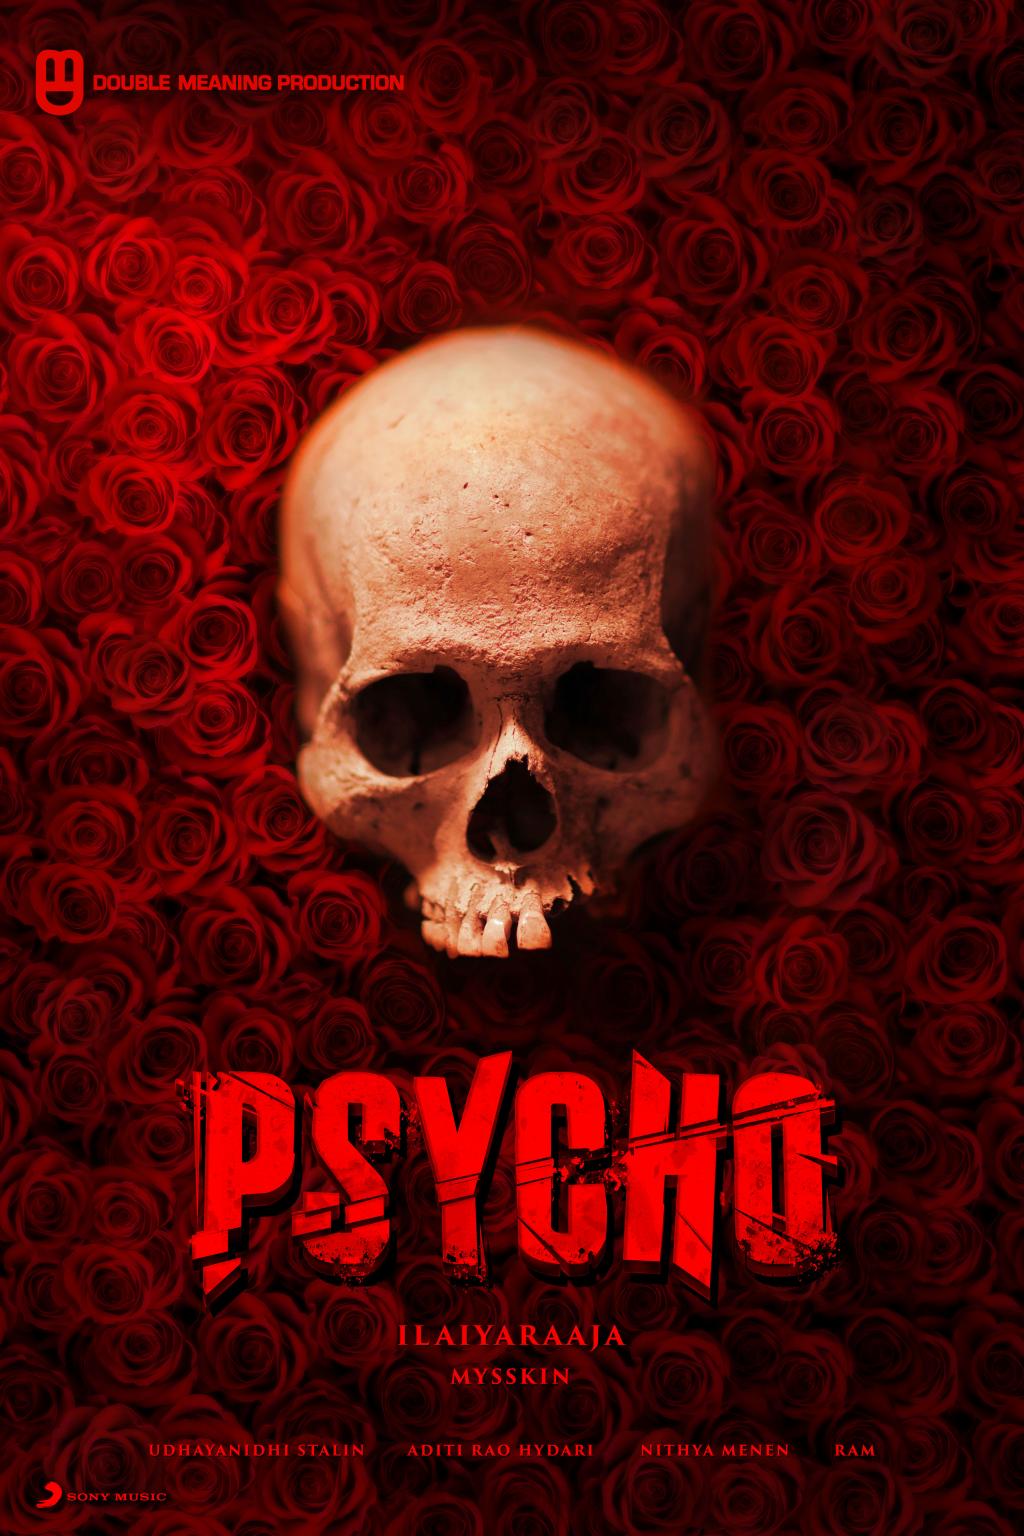 Psycho_poster02.jpg